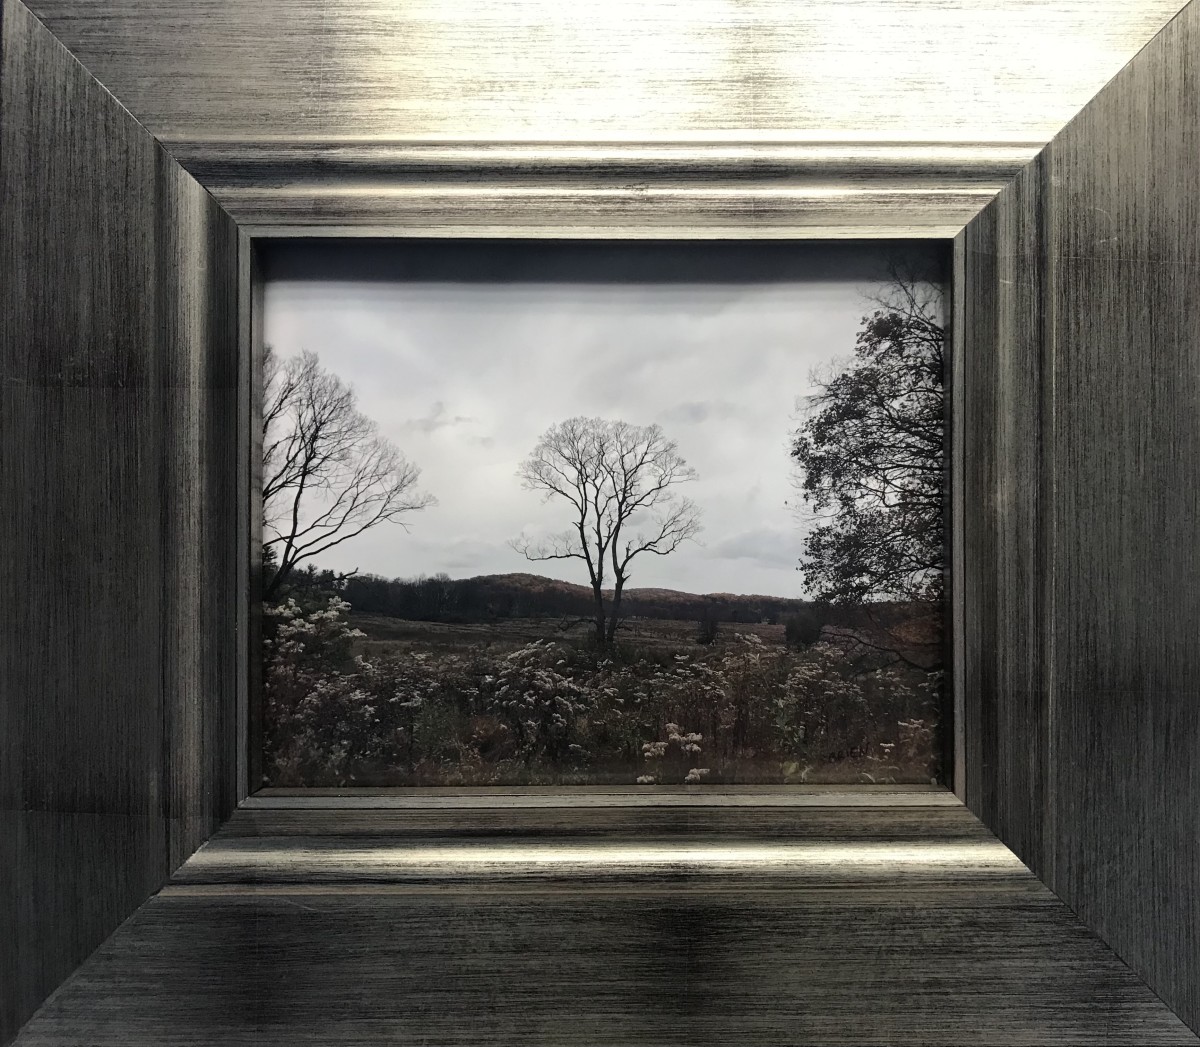 Photograph and framing by Sarah O’Brien 